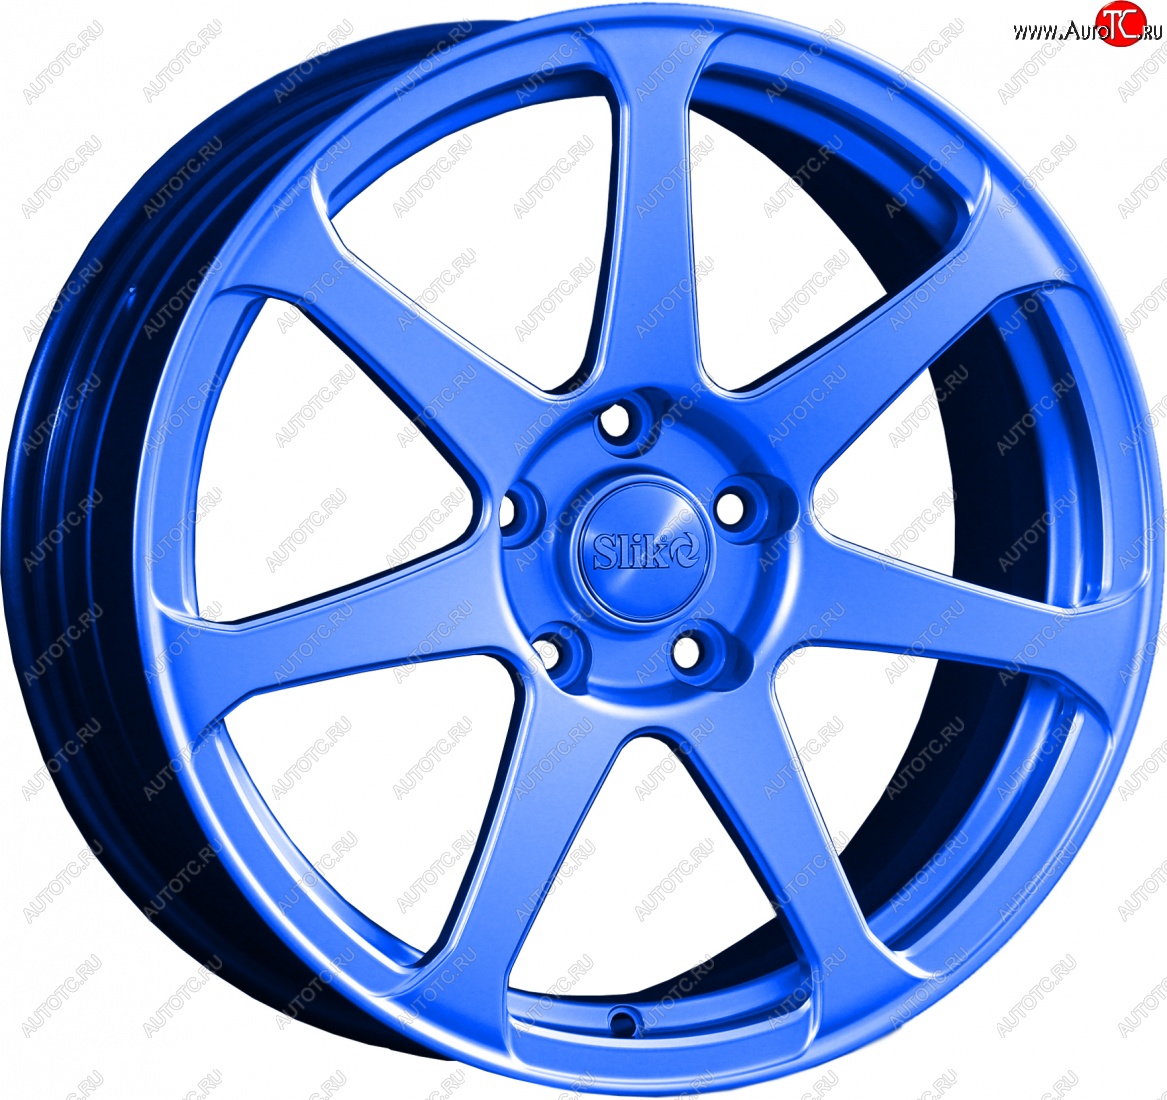 14 499 р. Кованый диск Slik classik R17x7.5 Синий (BLUE) 7.5x17 Toyota Allion T240 седан дорестайлинг (2001-2004) 5x100.0xDIA54.1xET45.0 (Цвет: BLUE)